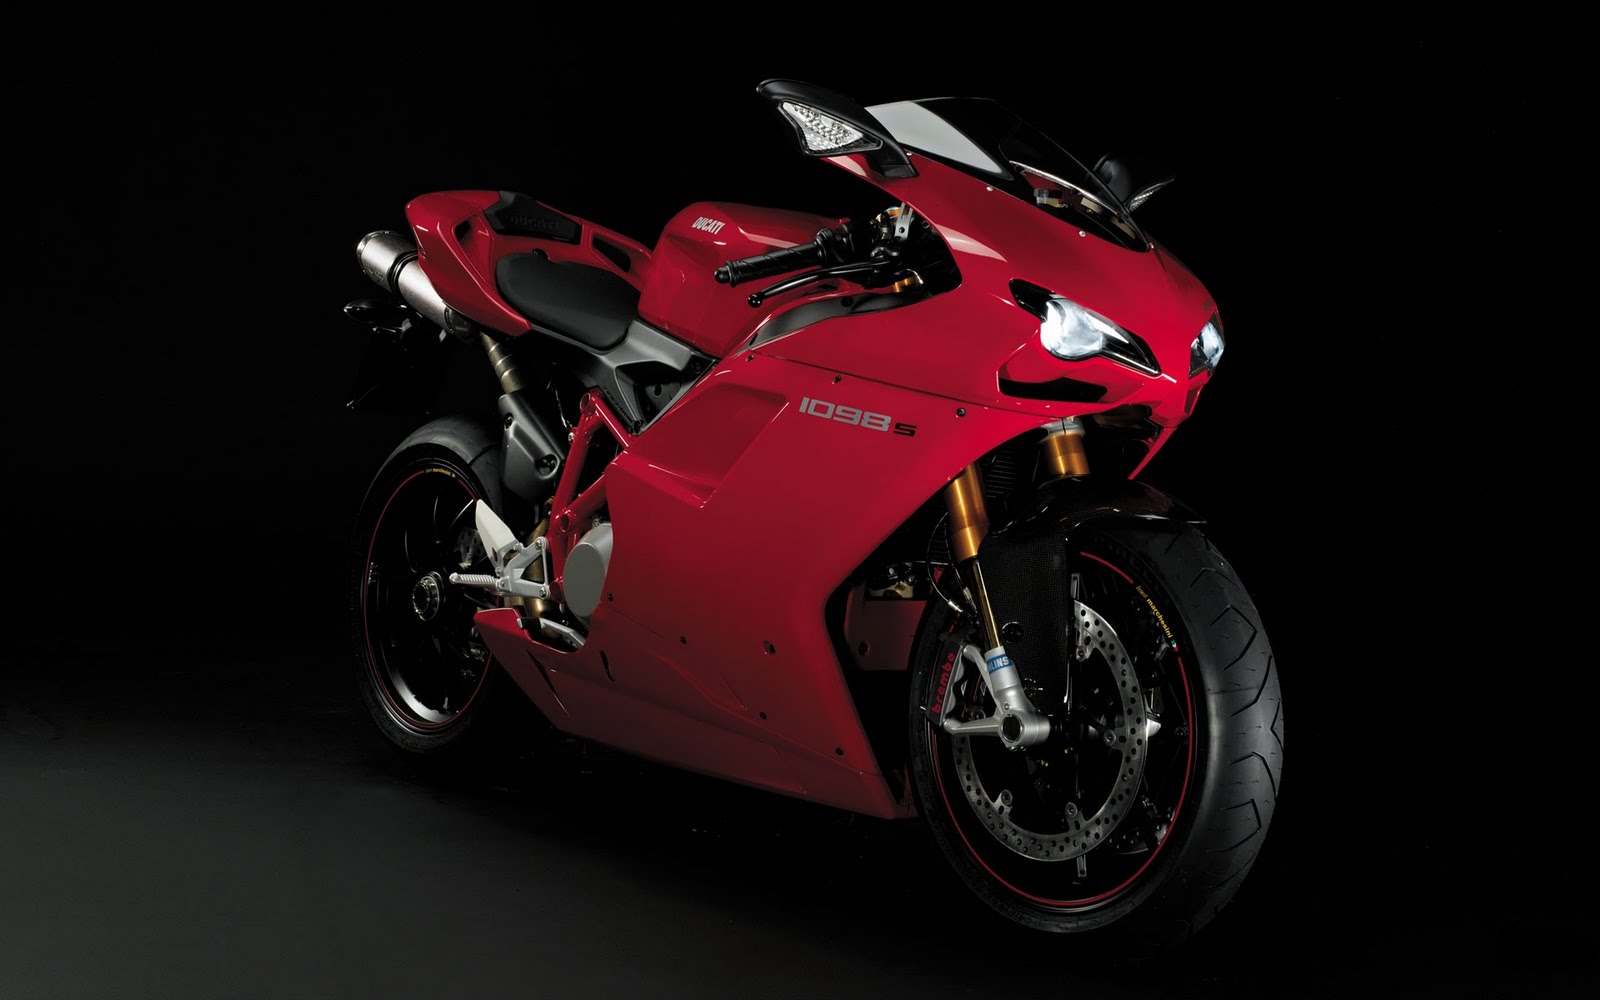 Ducati Wallpaper Big Motor Motorcycle Great